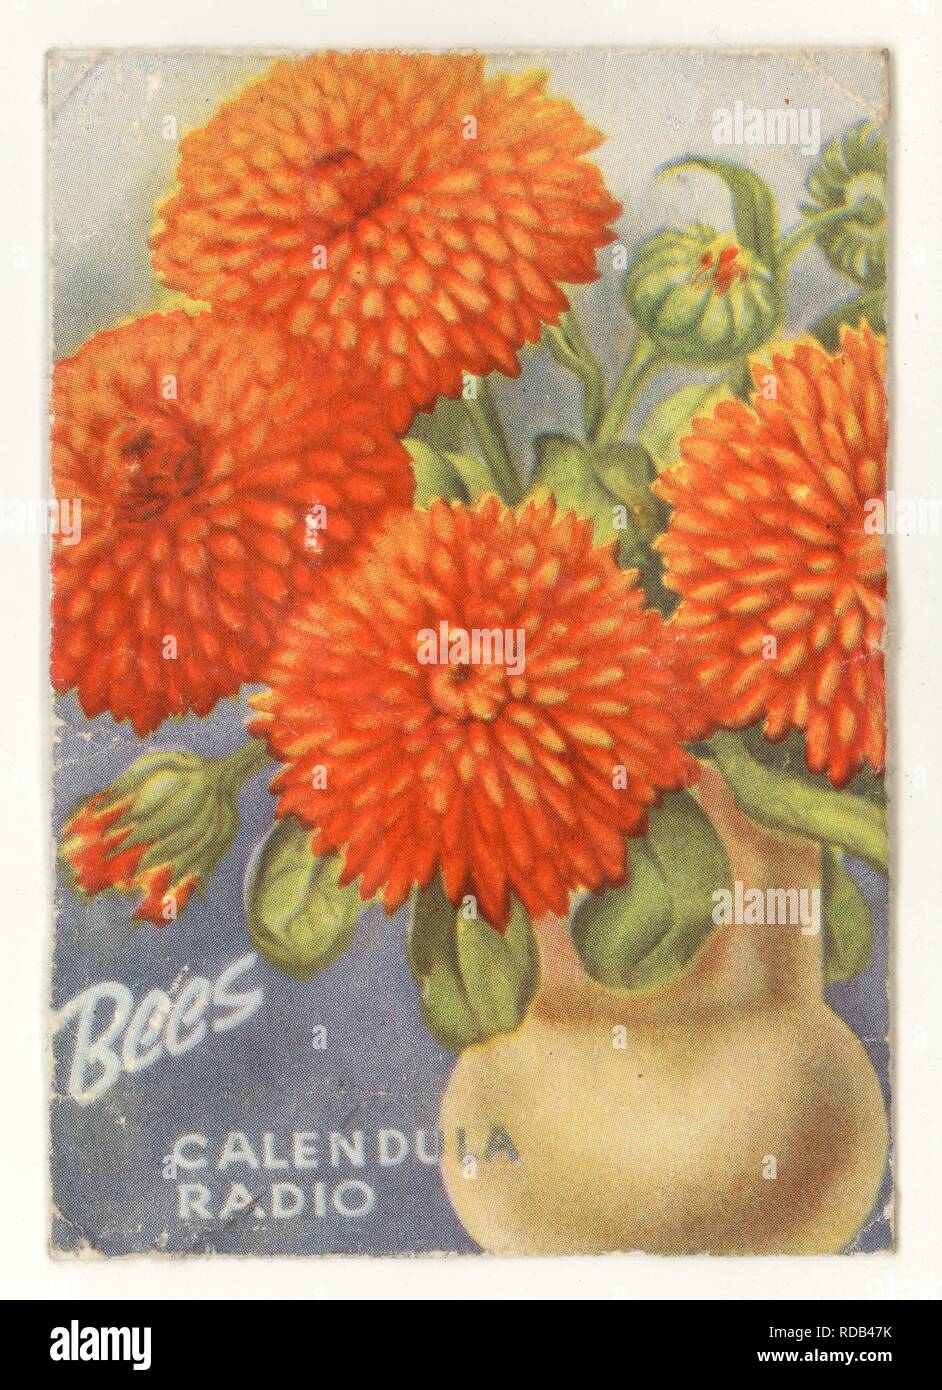 Die Vintage Biene Samen Paket, Calendula Radio Blumen, Liverpool, Großbritannien Stockfoto